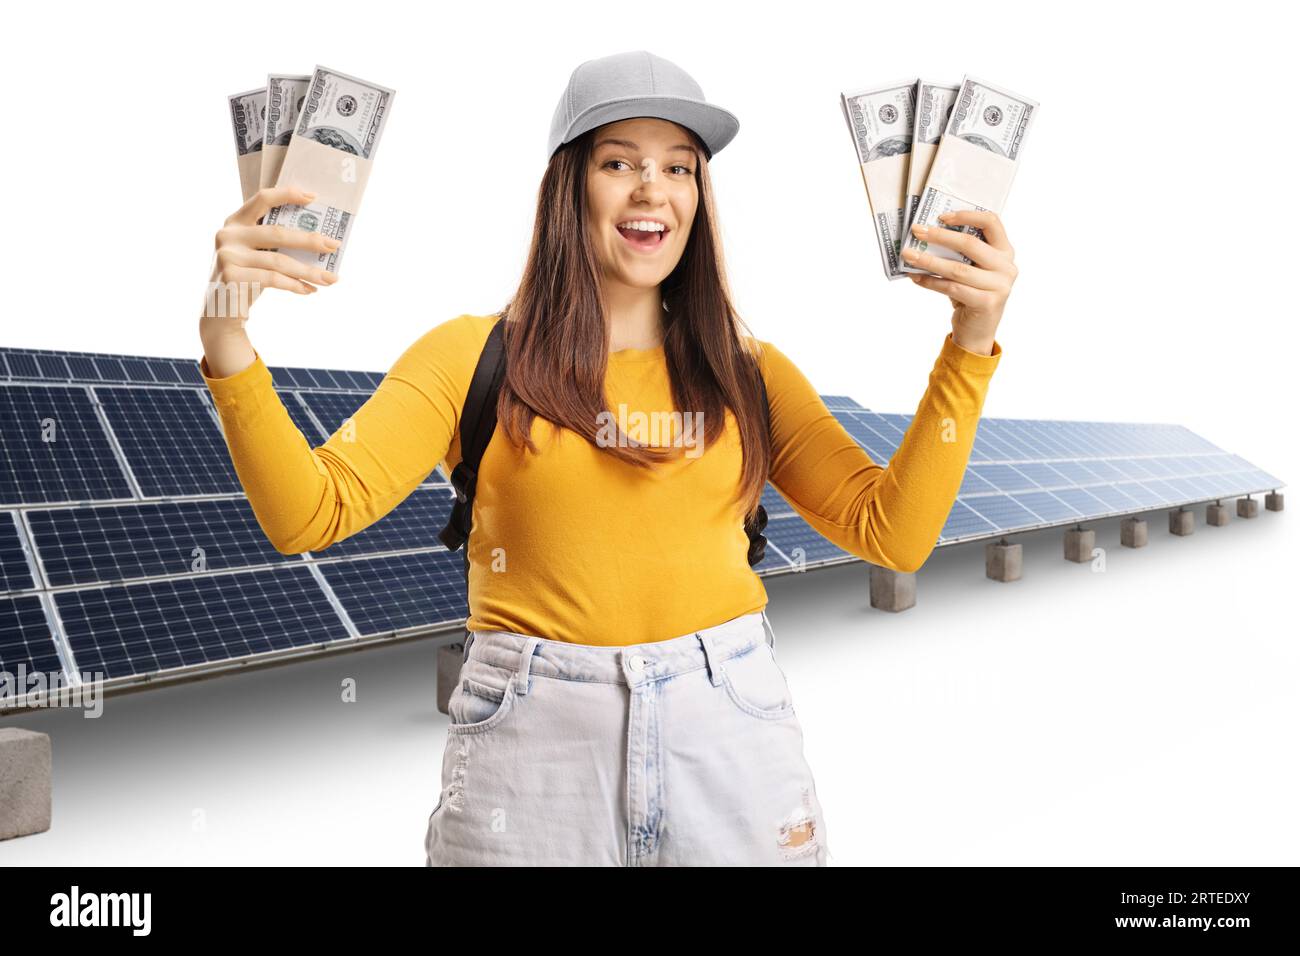 Giovane studentessa sorridente che detiene una serie di soldi davanti al fotovoltaico isolato su sfondo bianco Foto Stock